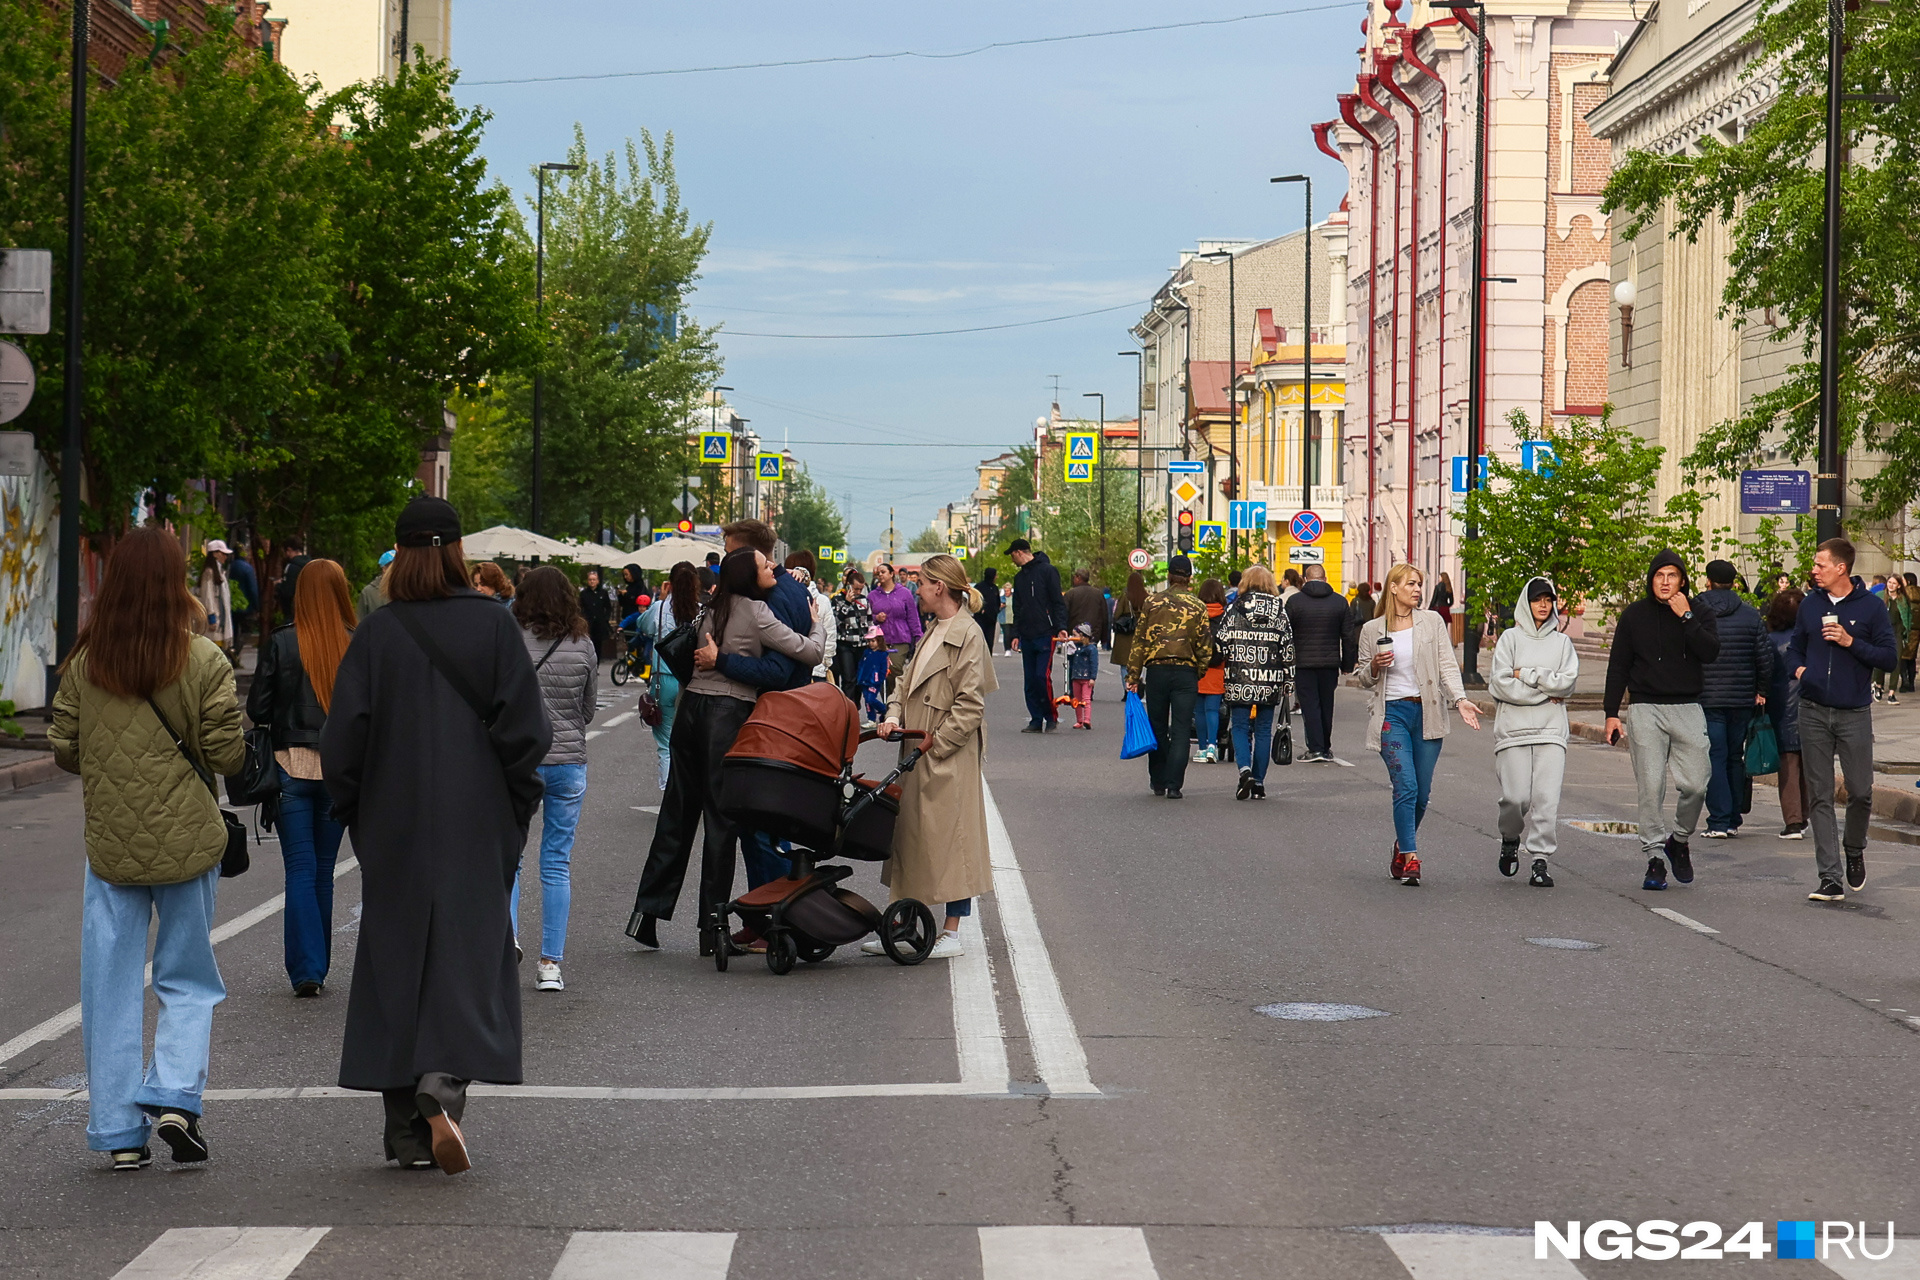 Сходить на выходных. Красноярск пешеходная улица.